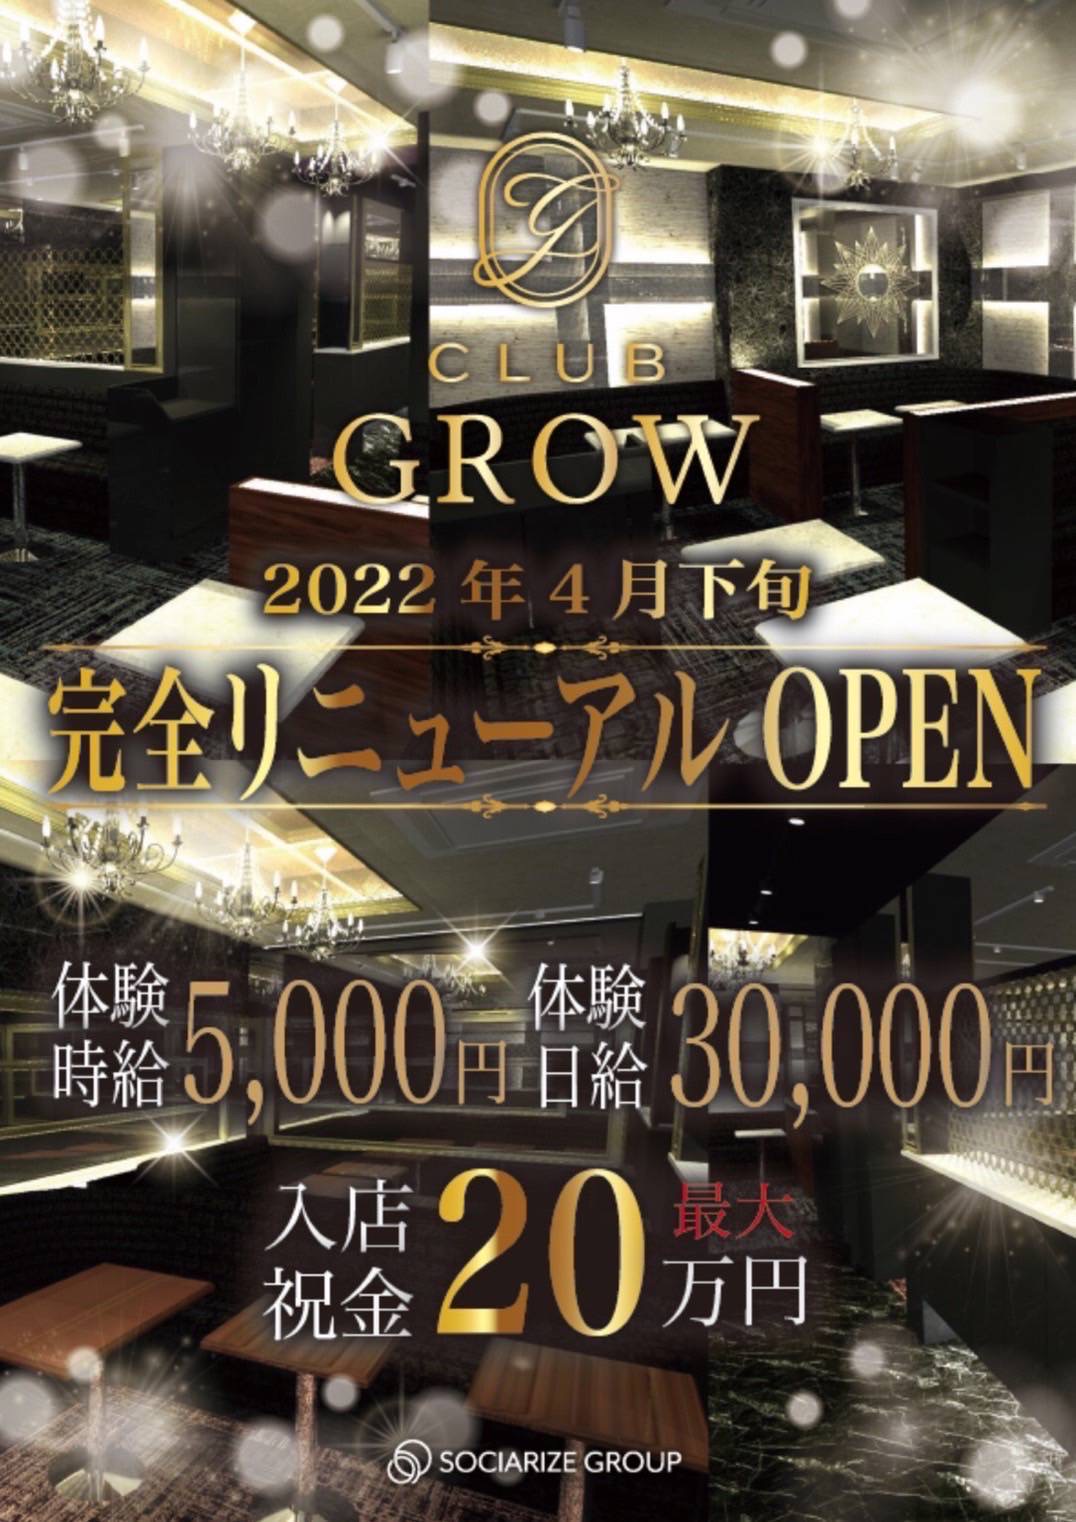 上田キャバクラ「Club Grow」ショップニュース